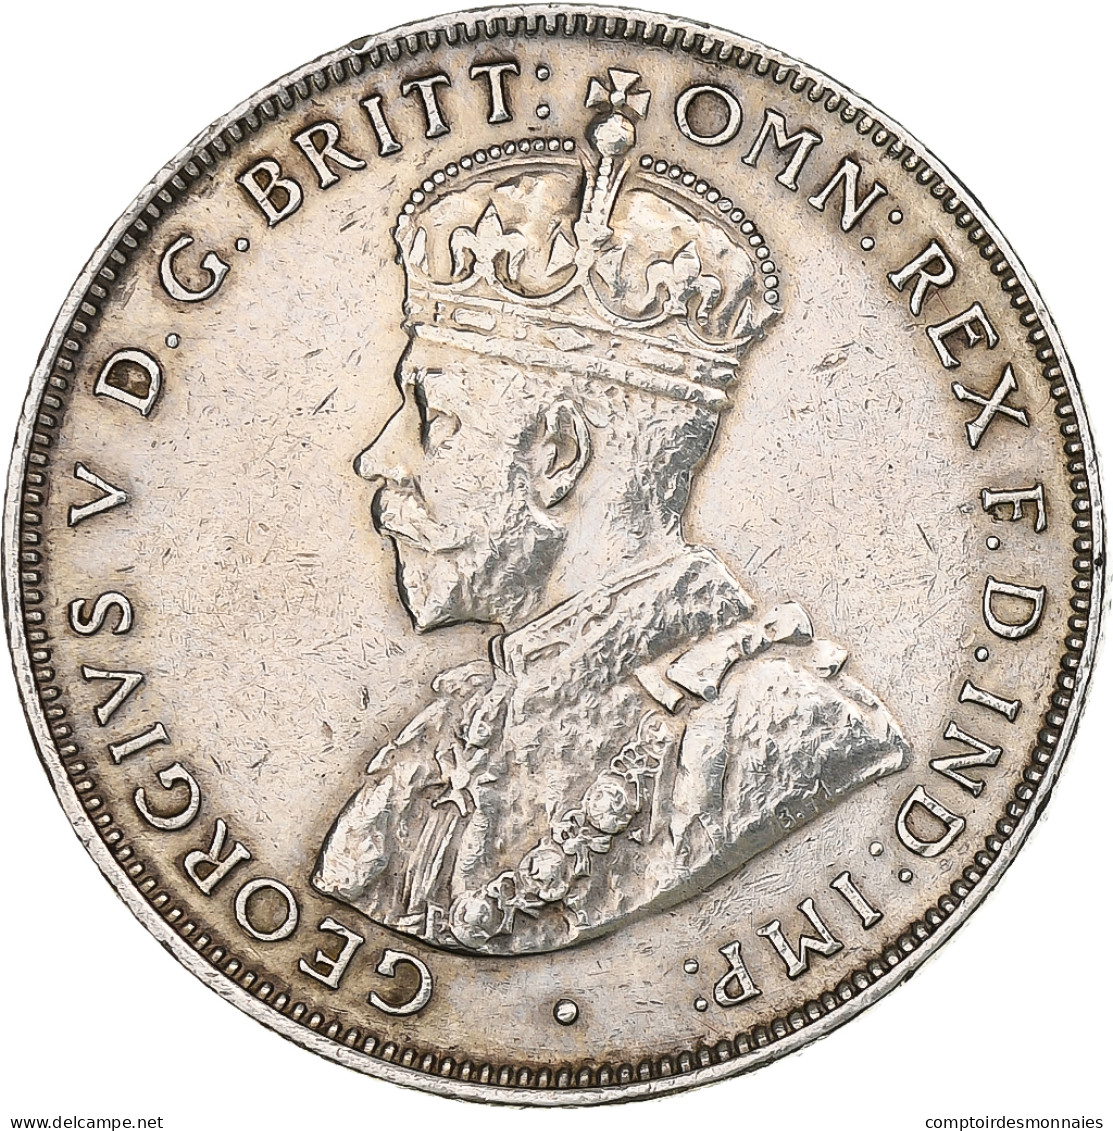 Afrique Occidentale Britannique, George V, 2 Shillings, 1919, Heaton, Argent - Kolonien